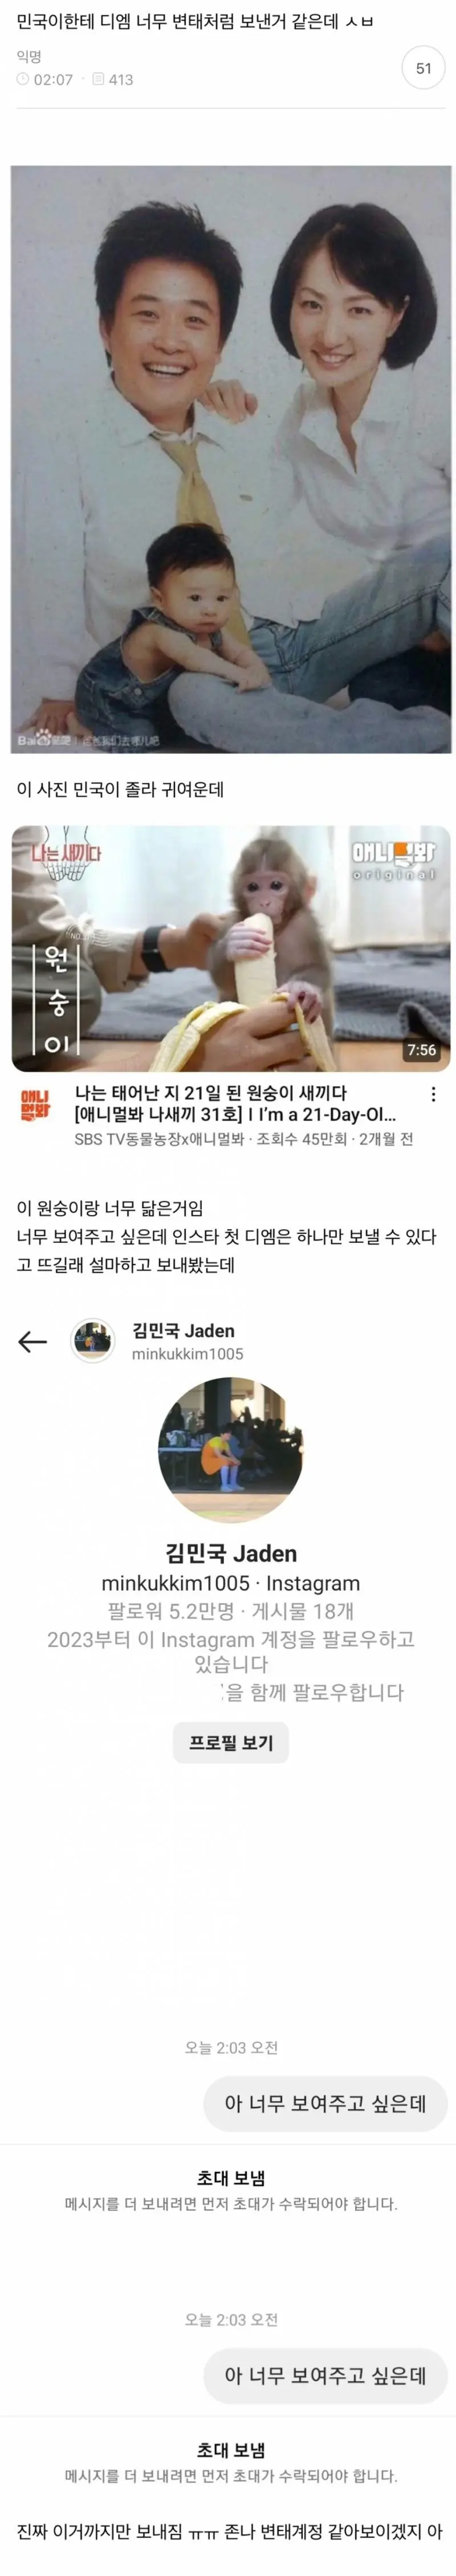 [민국이한테디엠너무변태처럼보낸거같은데ᐲᗨ] 글.. 김민국 입장뜸ㅋㅋㅋㅋㅋㅋ | mbong.kr 엠봉